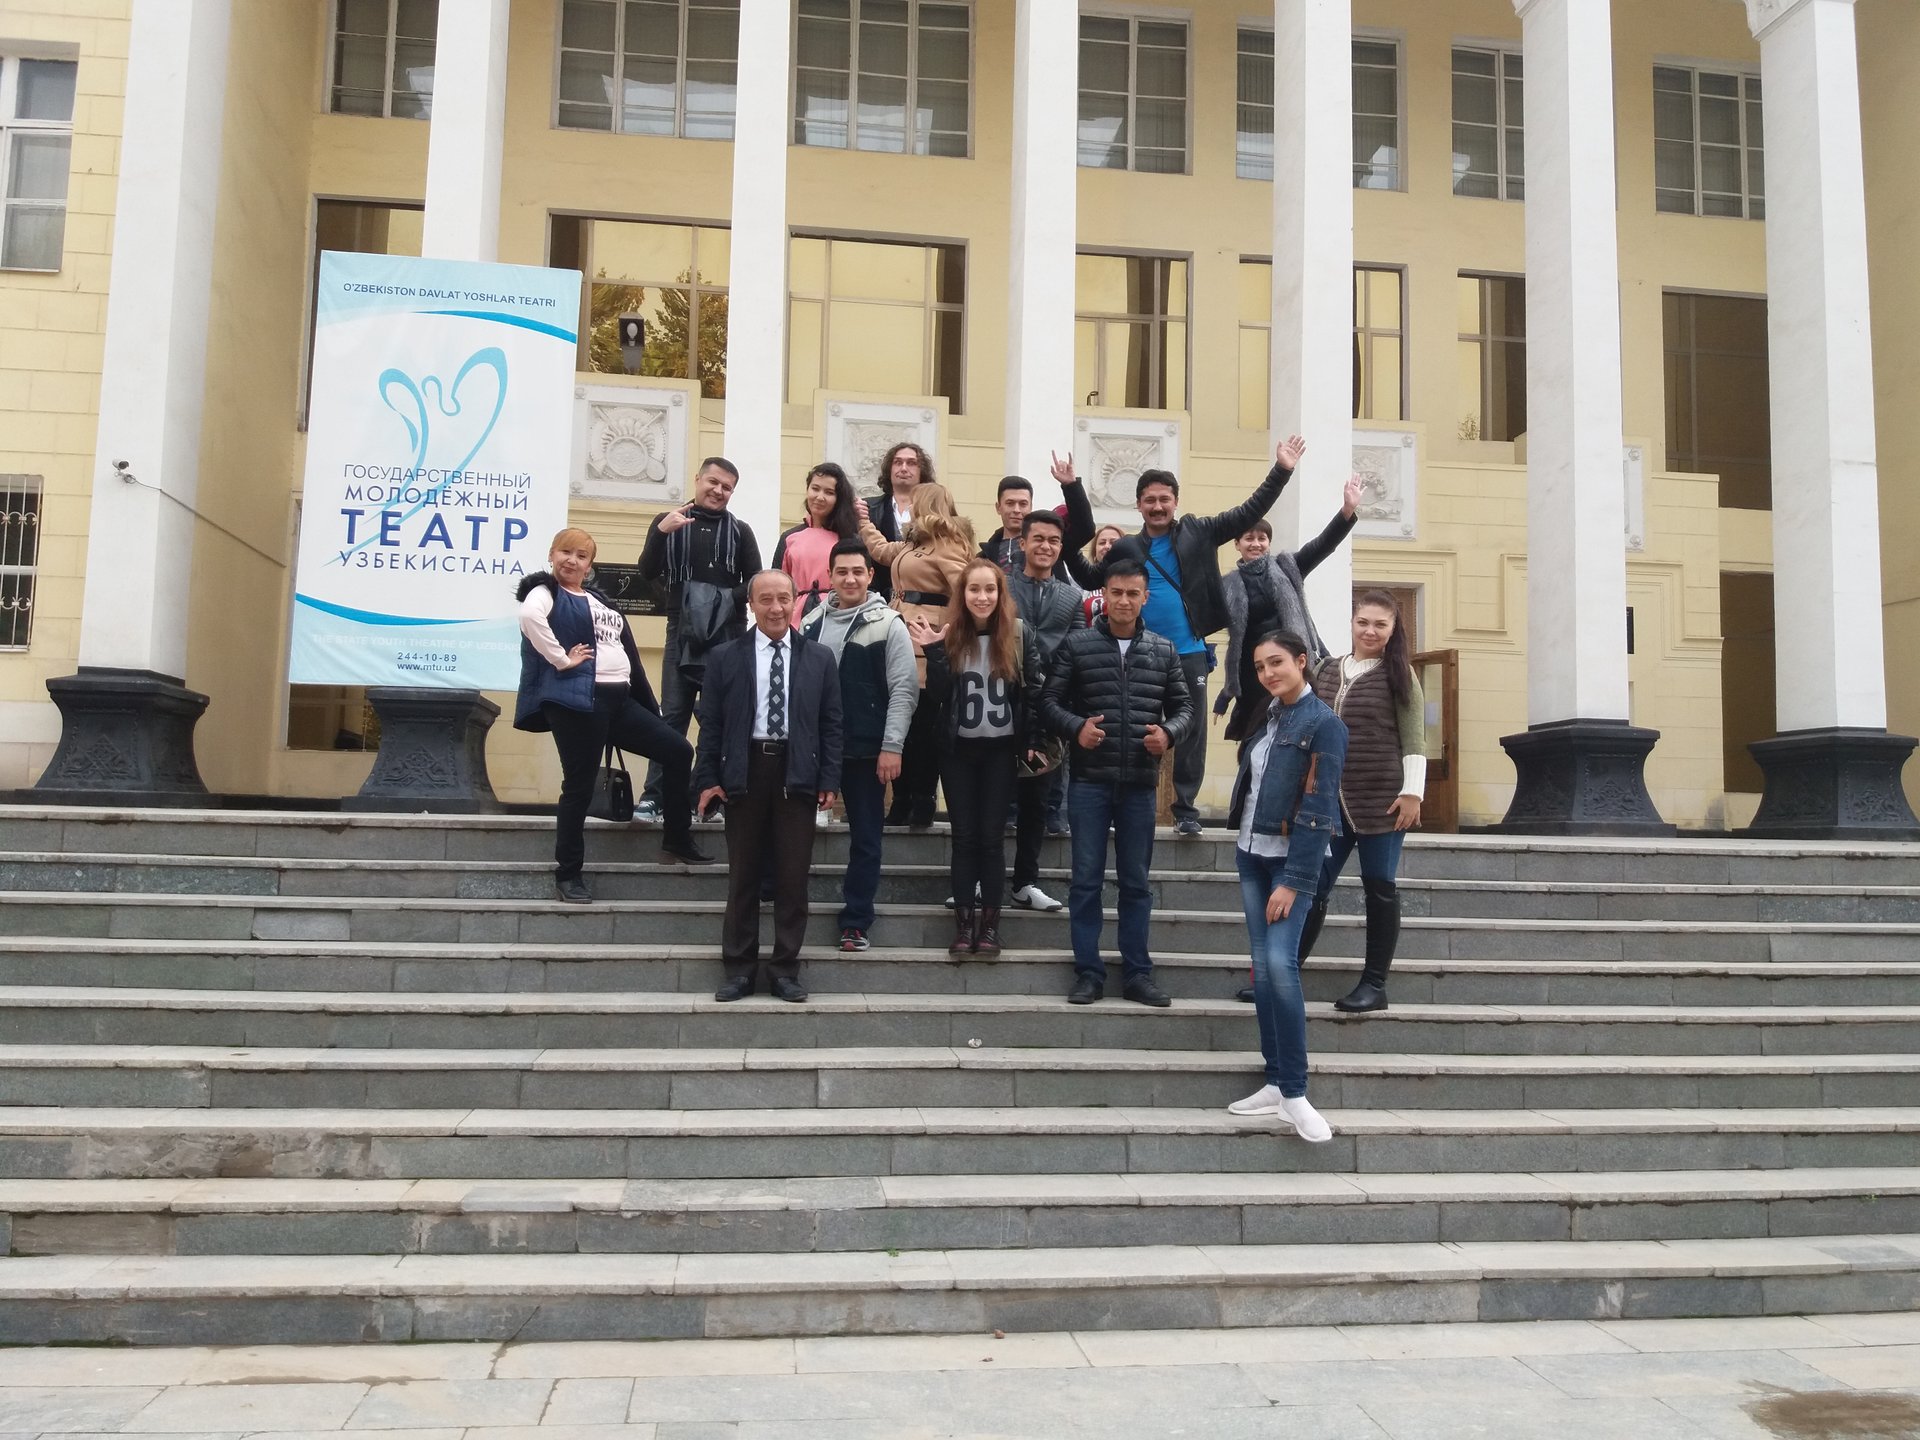 Гастроли в г.Ташкенте 30-31 октября 2018